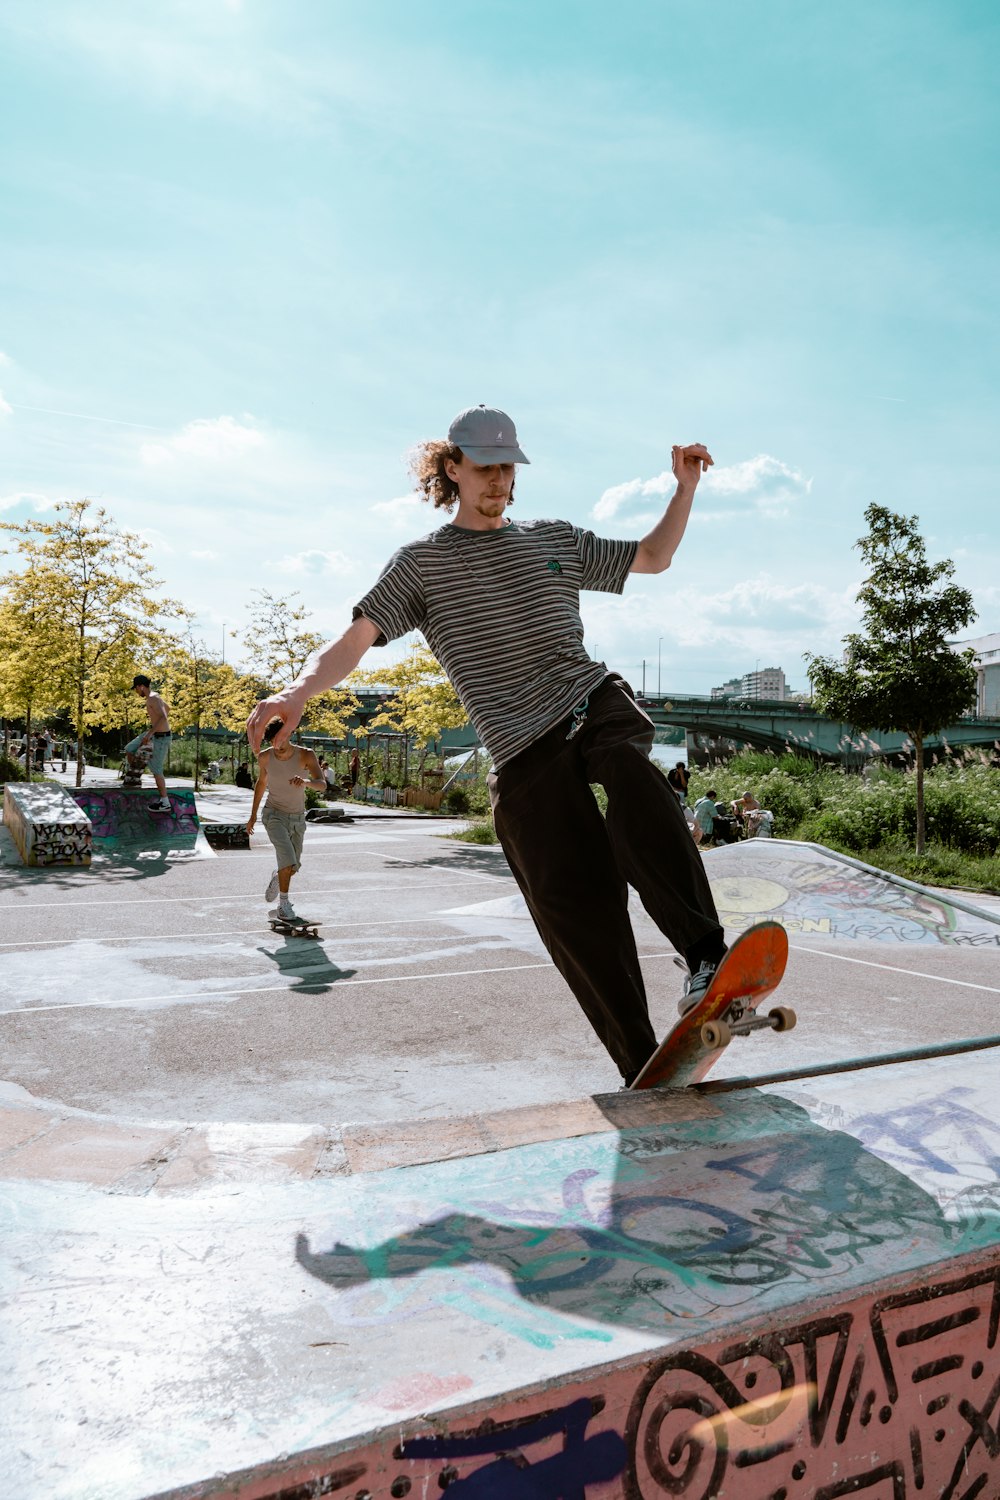 ein mann, der auf einem skateboard an der seite einer rampe fährt